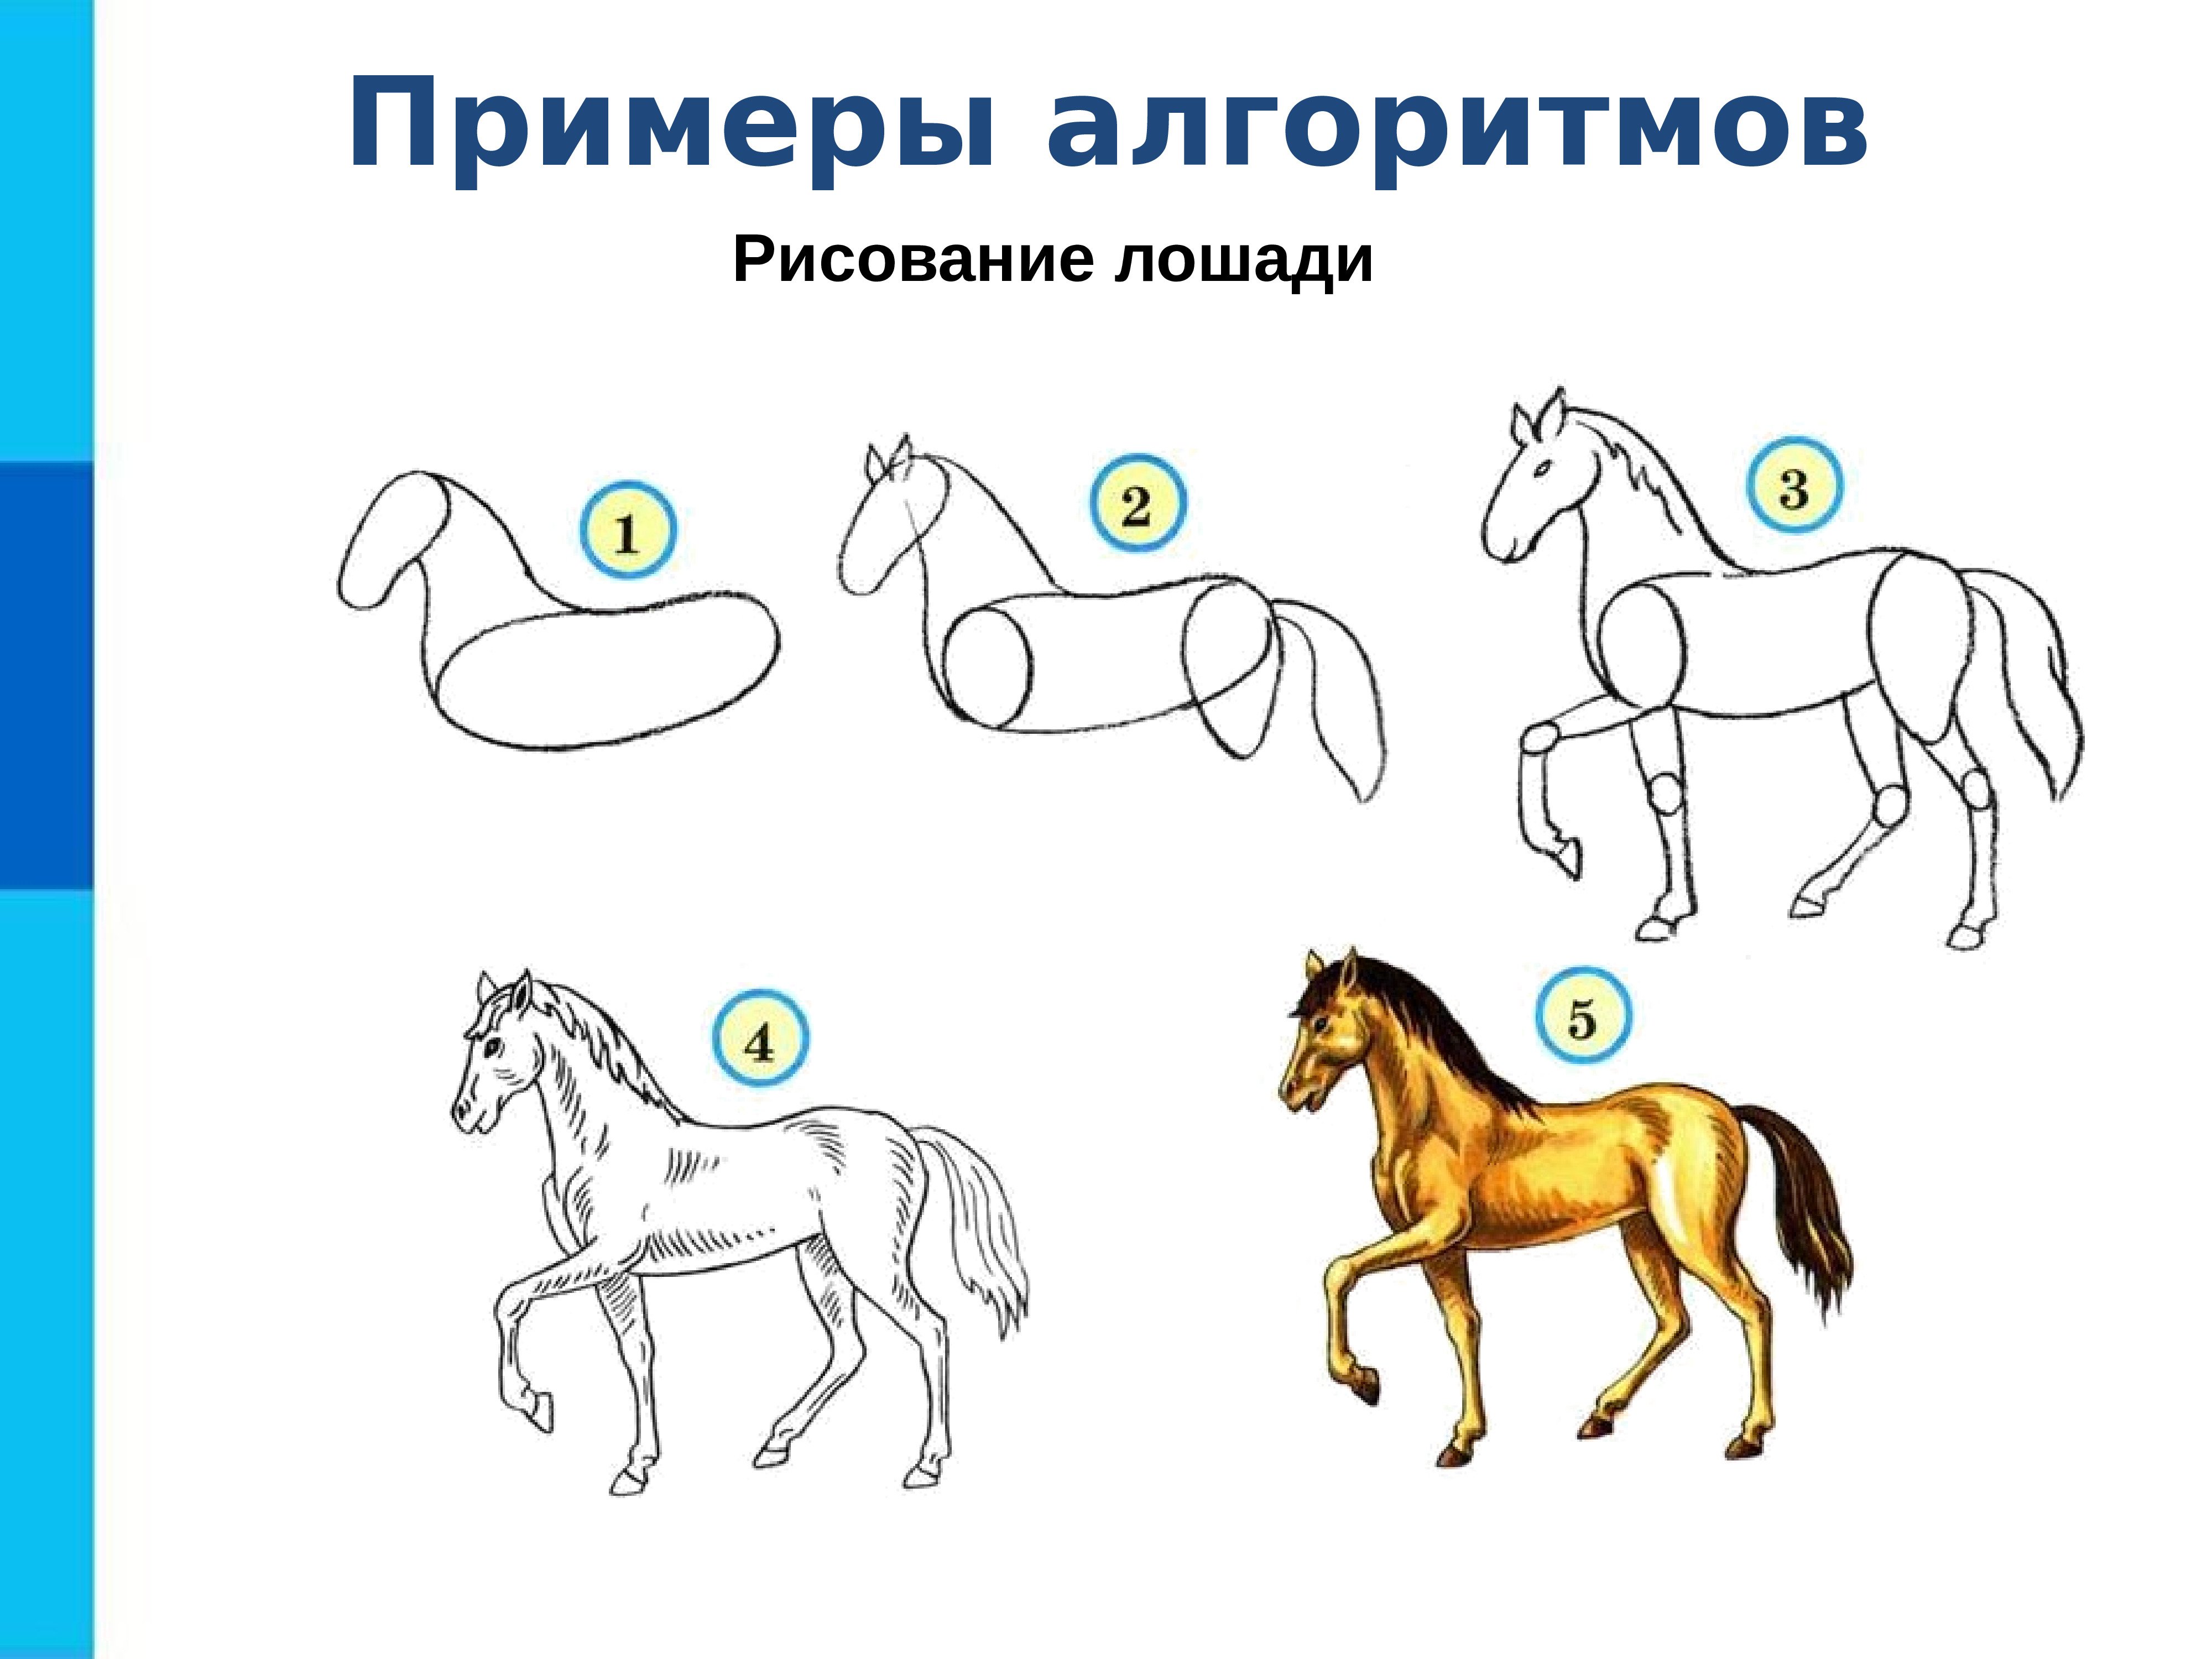 Алгоритм рисования лошади